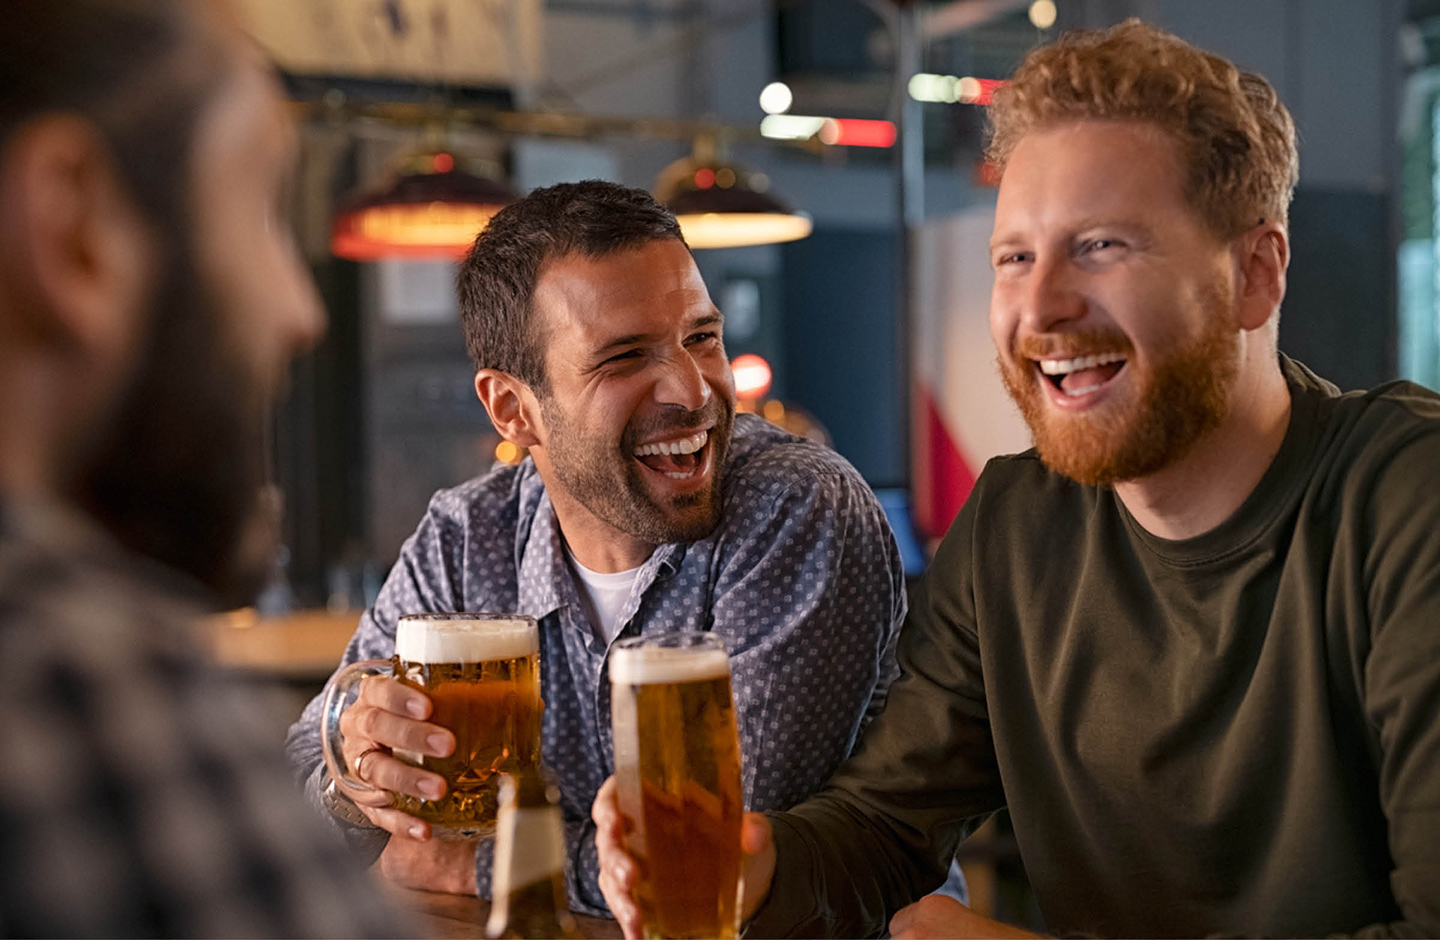 Drei Männer sitzen am Tisch und stoßen mit einem Bier an. Die Stimmung ist heiter.